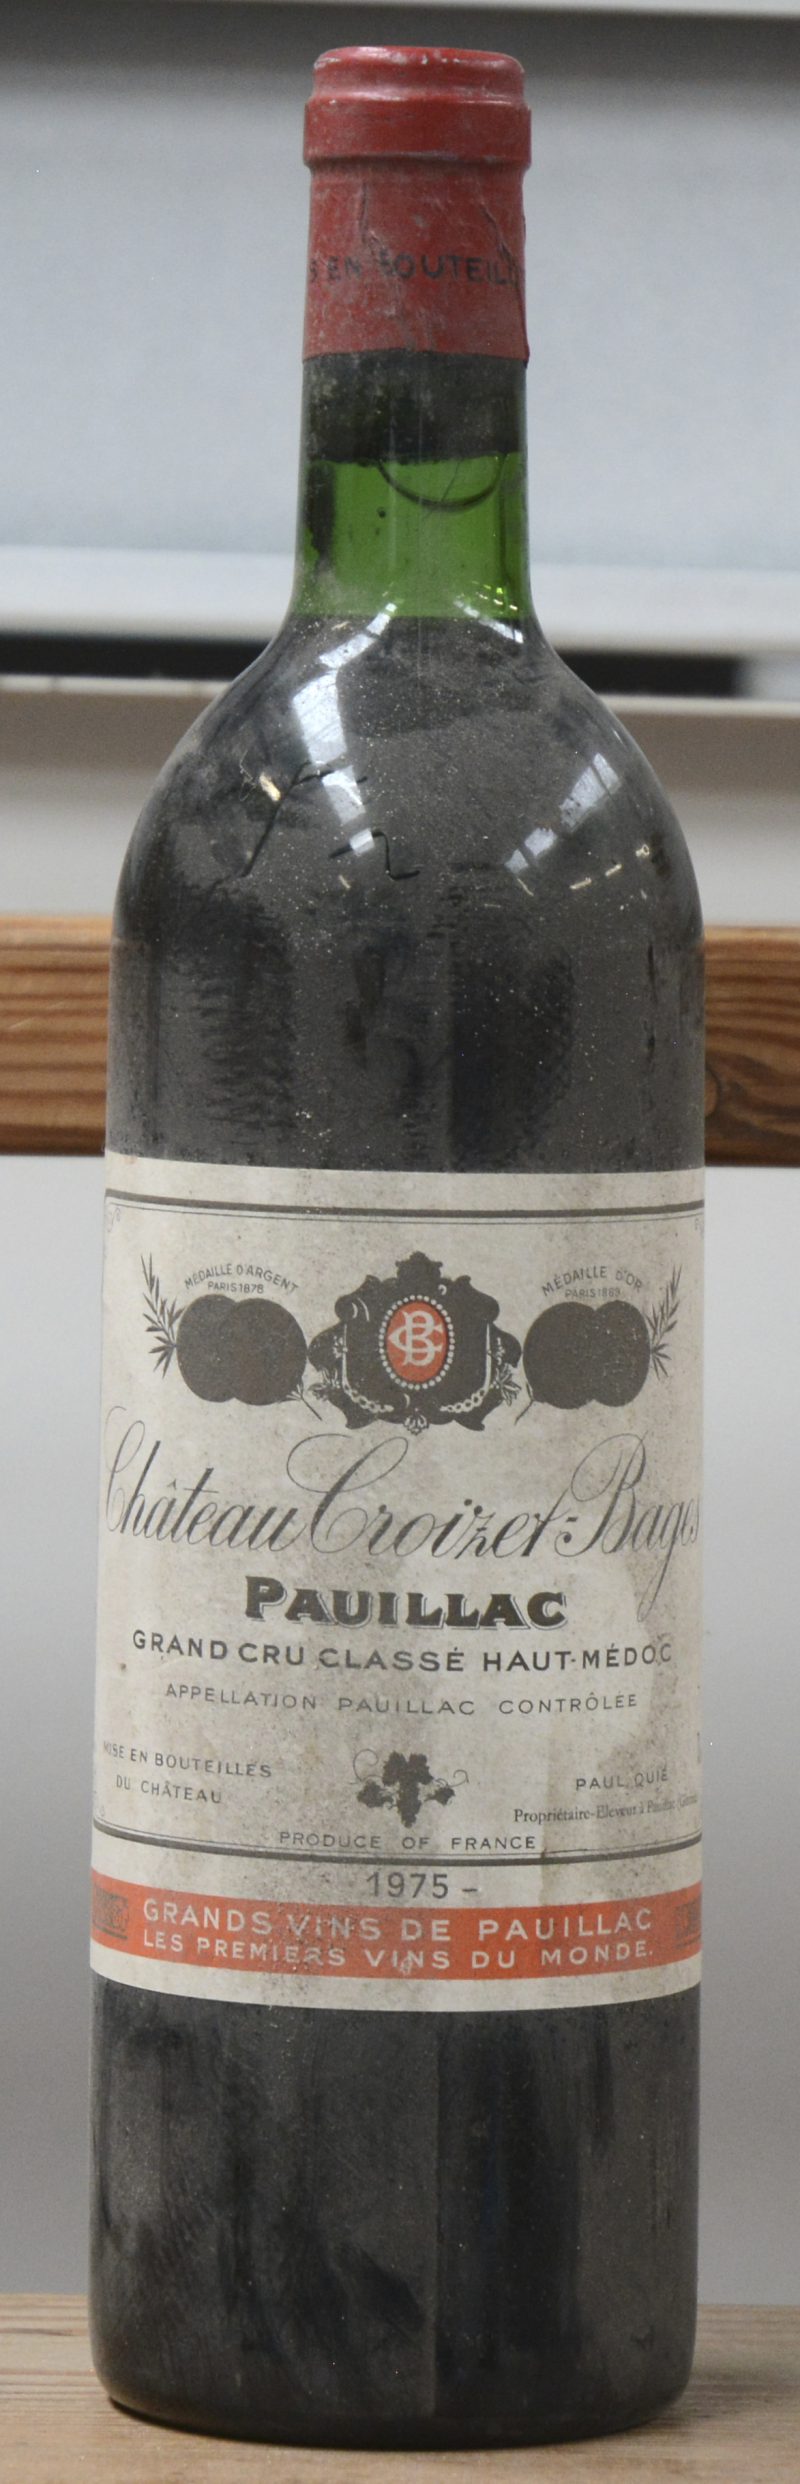 Ch. Croizet-Bages A.C. Pauillac 5e grand cru classé  M.C.  1975  aantal: 1 Bt. neck